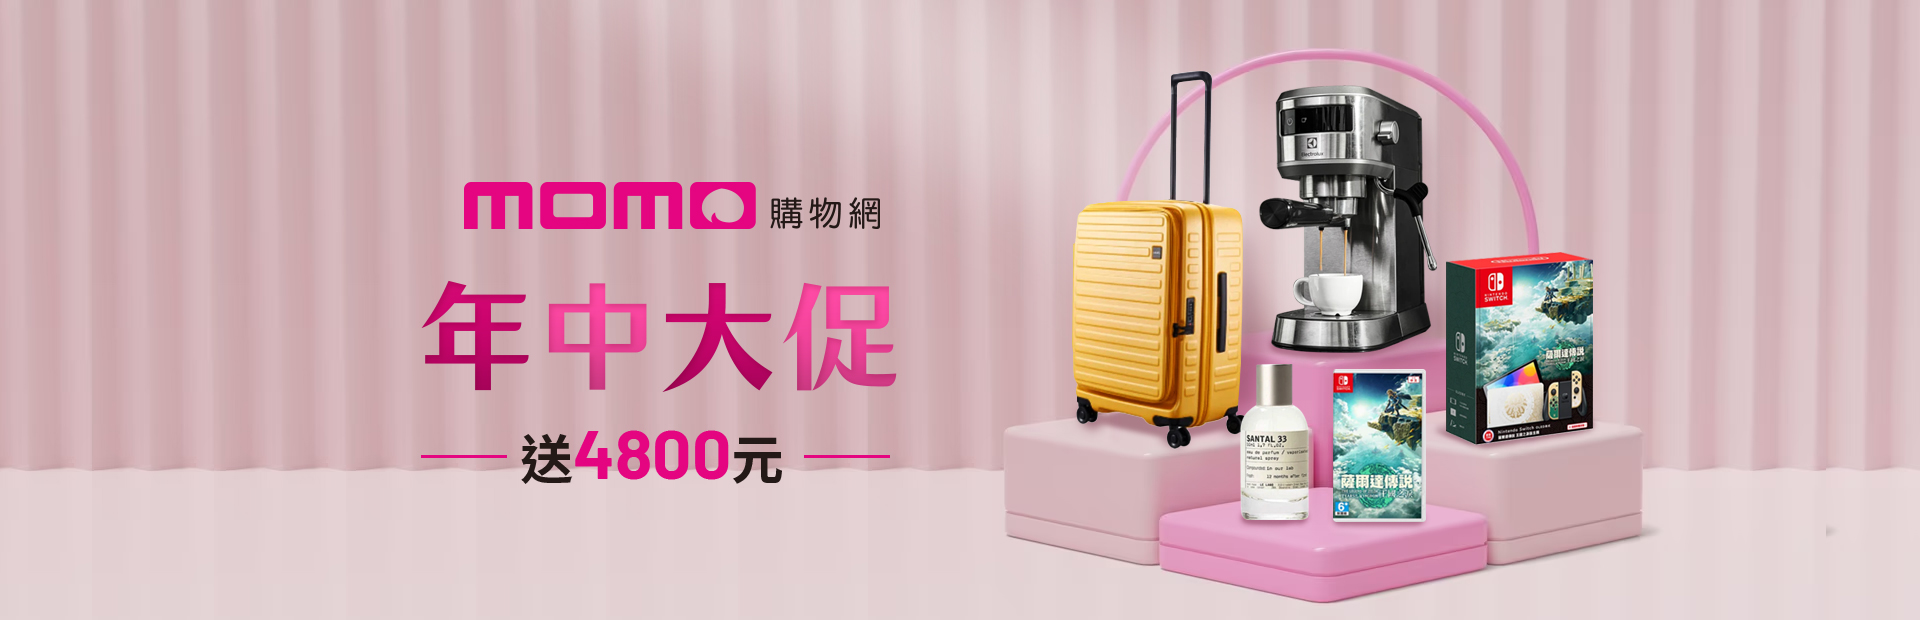 momo購物網6月優惠活動